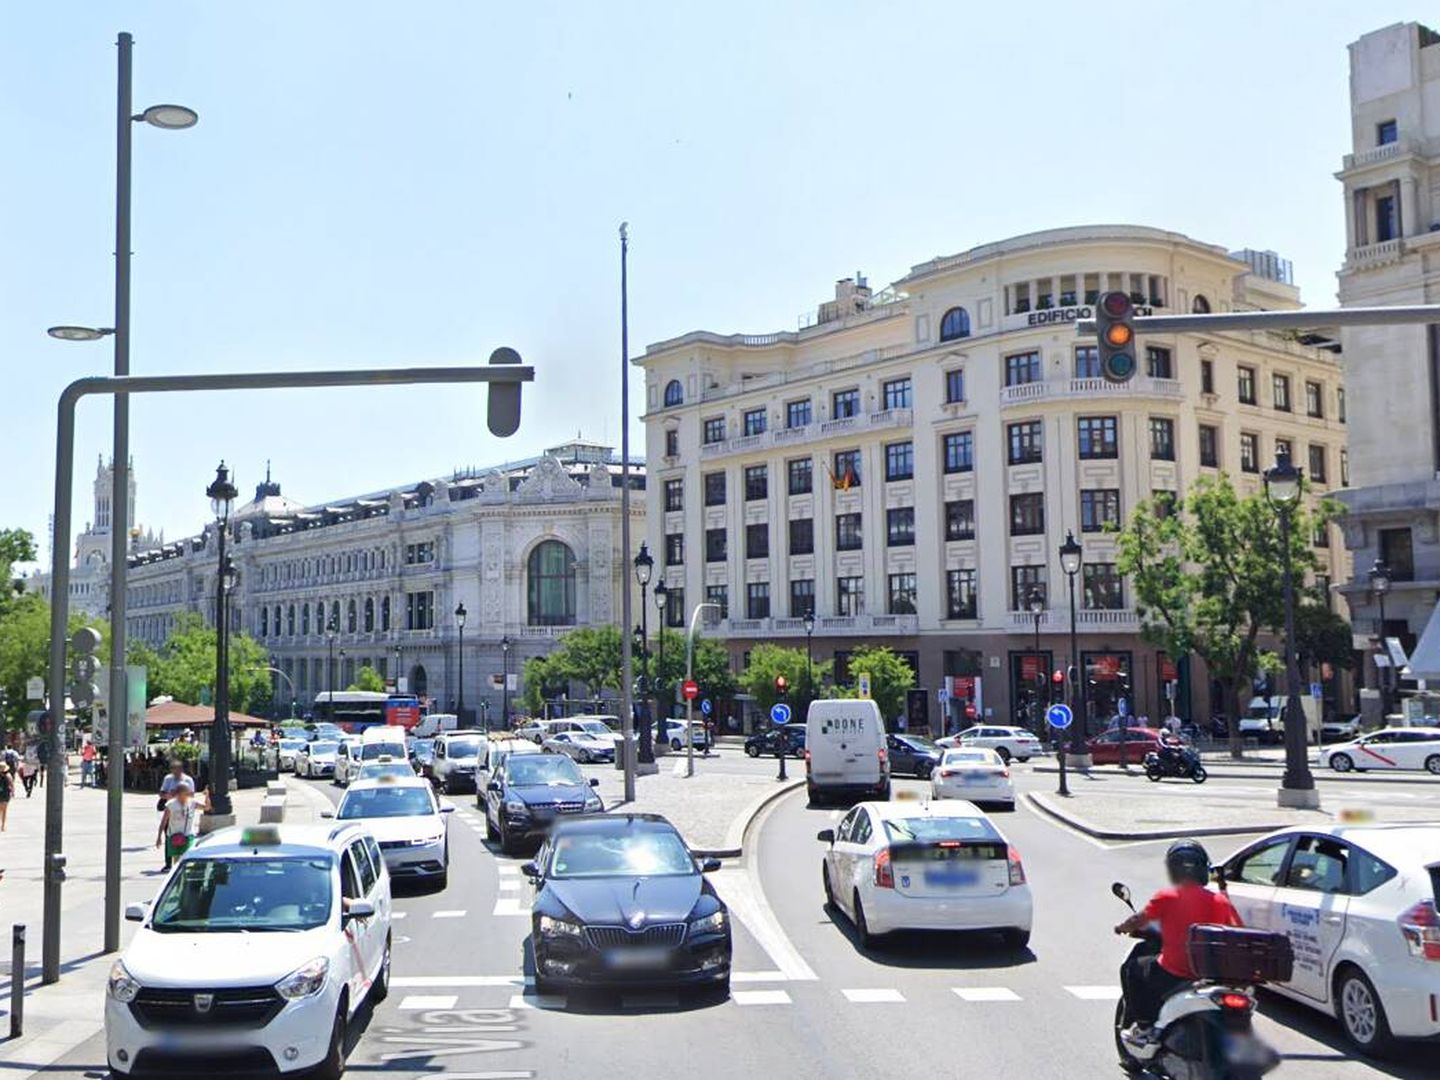 Diferencia de las farolas entre las calles de Alcalá y Gran Vía. (Streetview)